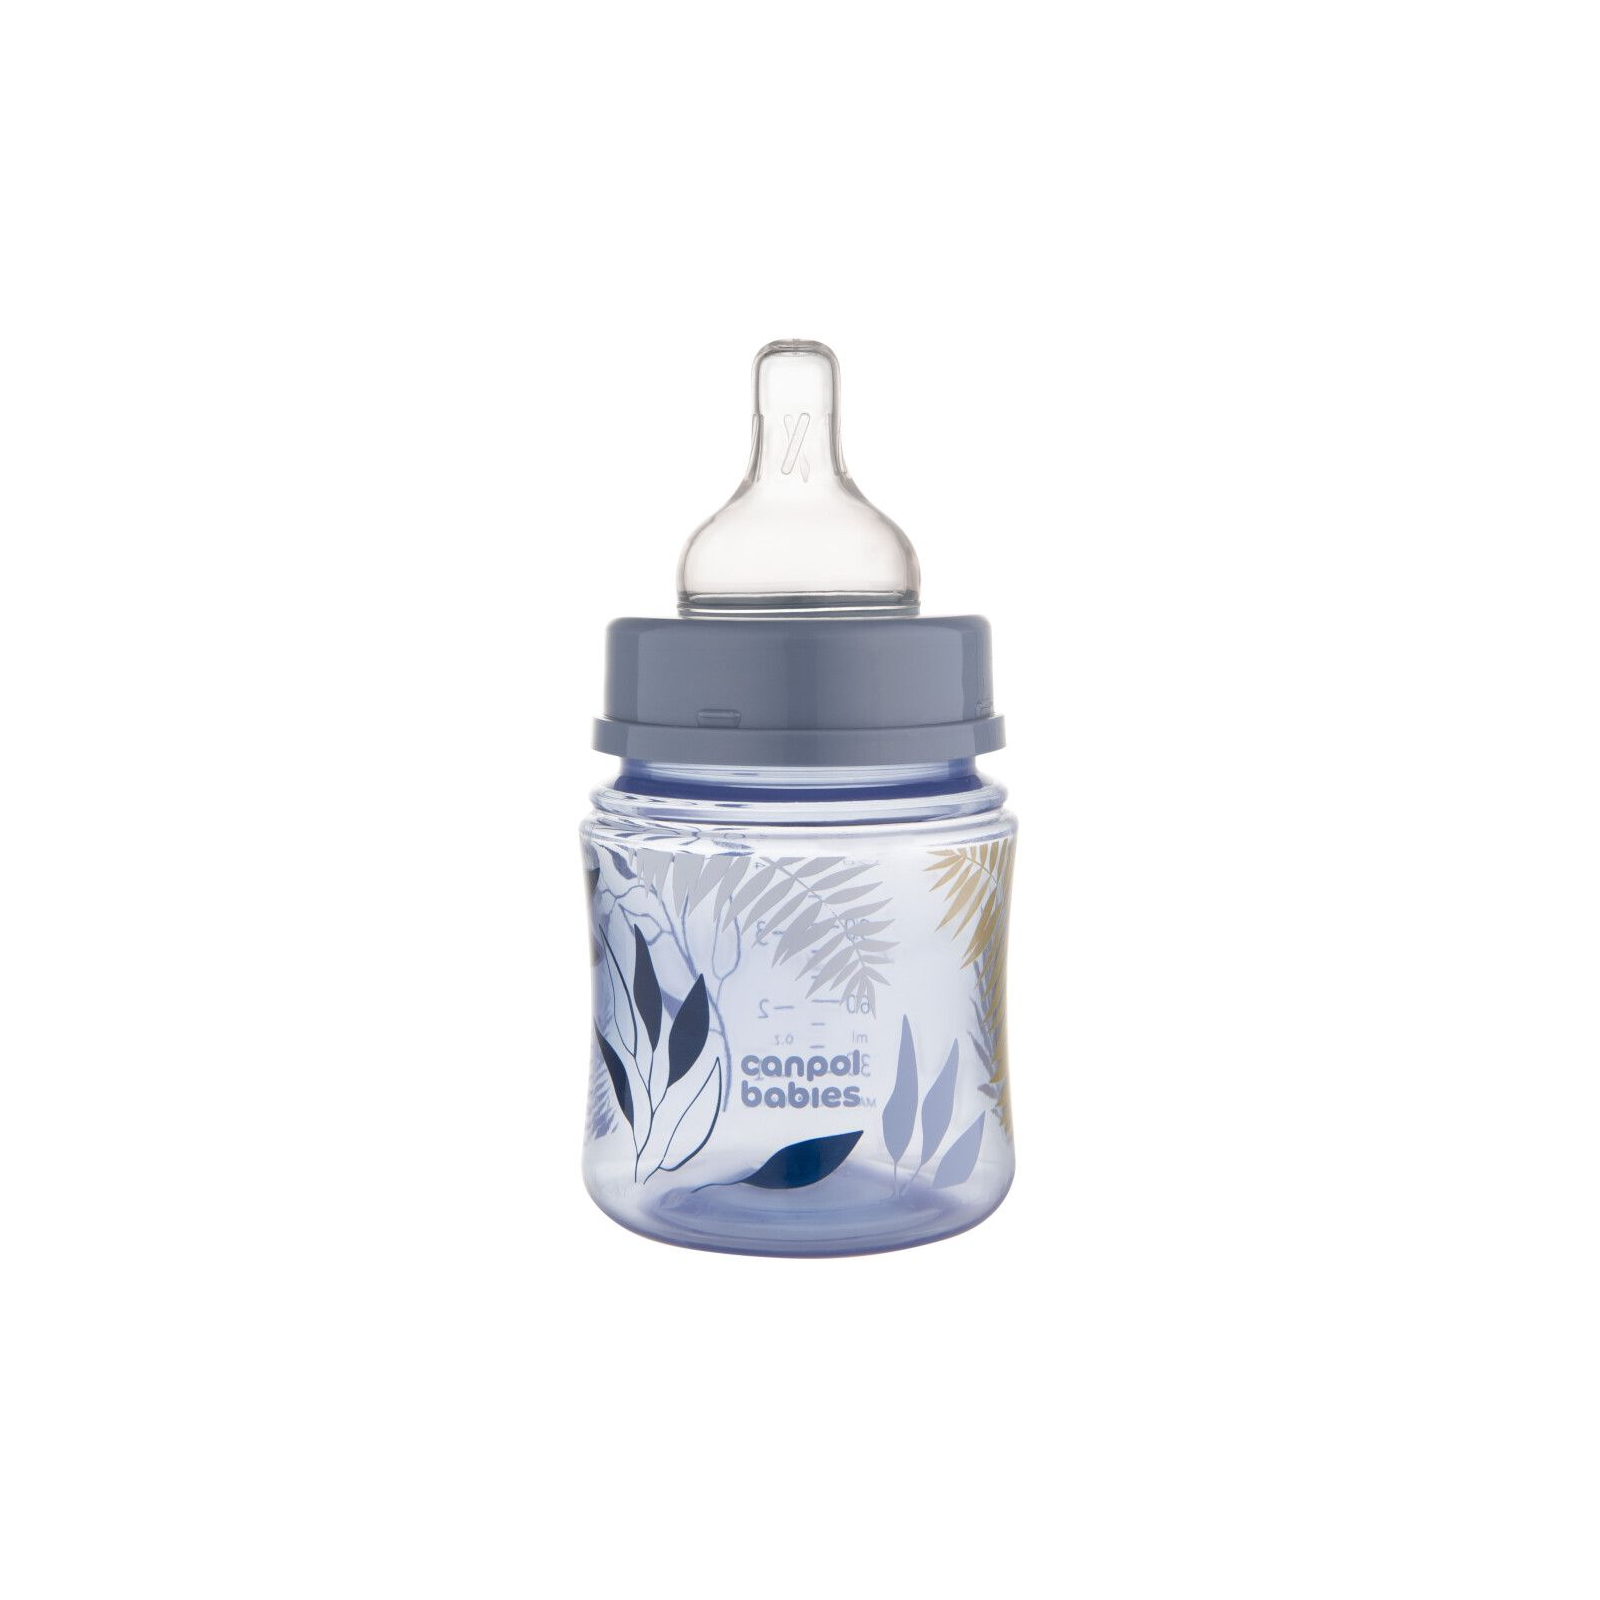 Бутылочка для кормления Canpol babies Easystart GOLD 120 мл антикол. с широк. голубая (35/239_blu) изображение 2